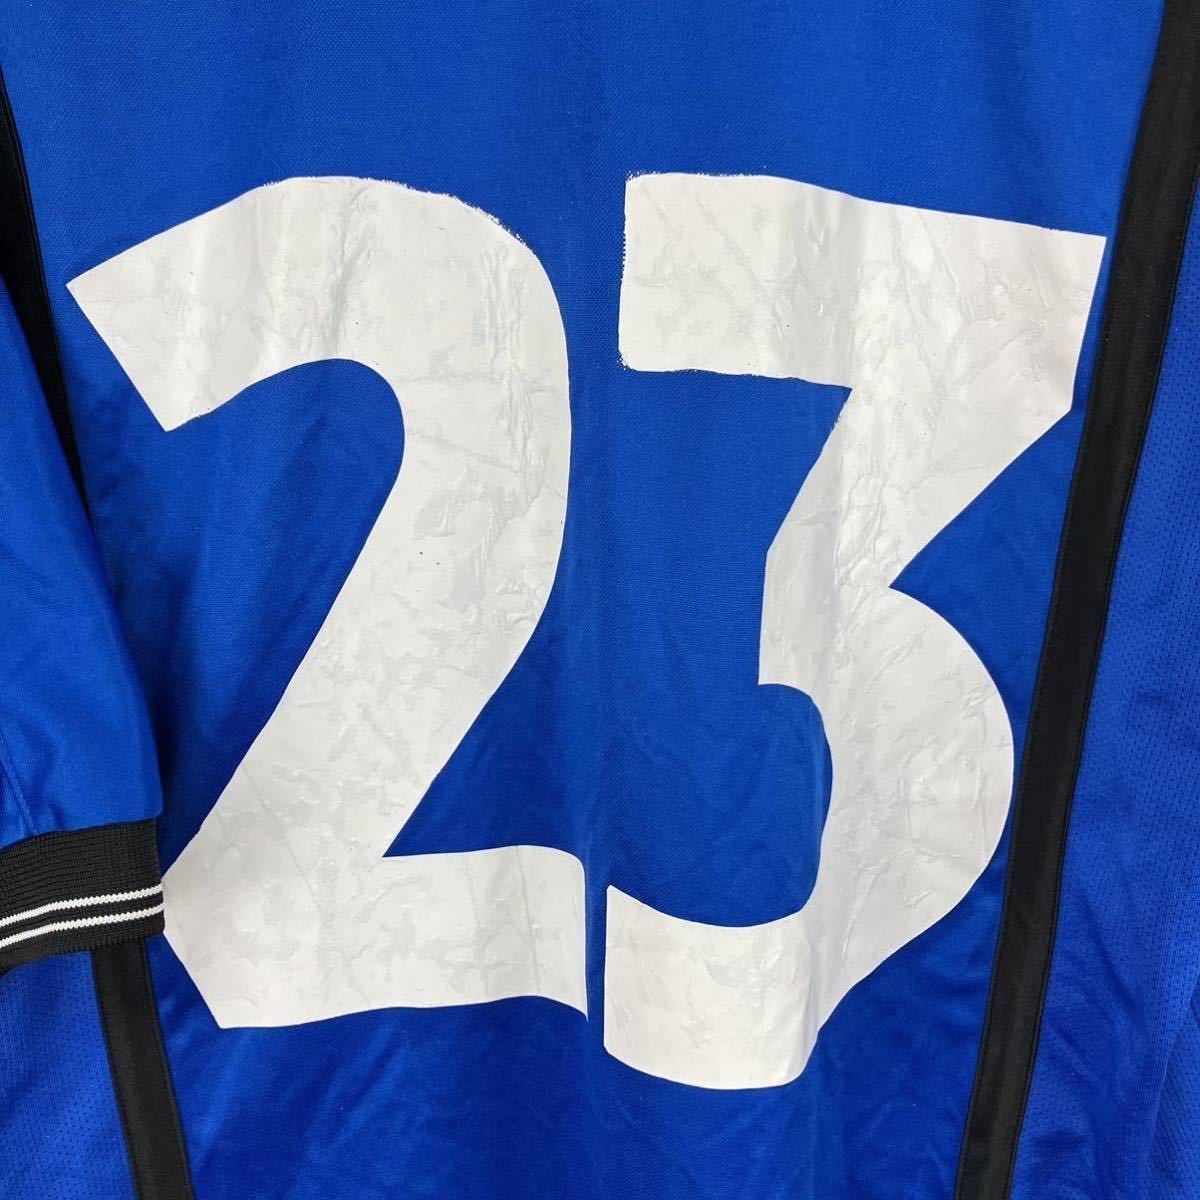 NIKE ナイキ メンズ Tシャツ ポロシャツ ユニフォーム 背番号 青Tシャツ Lサイズ スポーツウェア サッカーウェア シンプル Vネック 23番